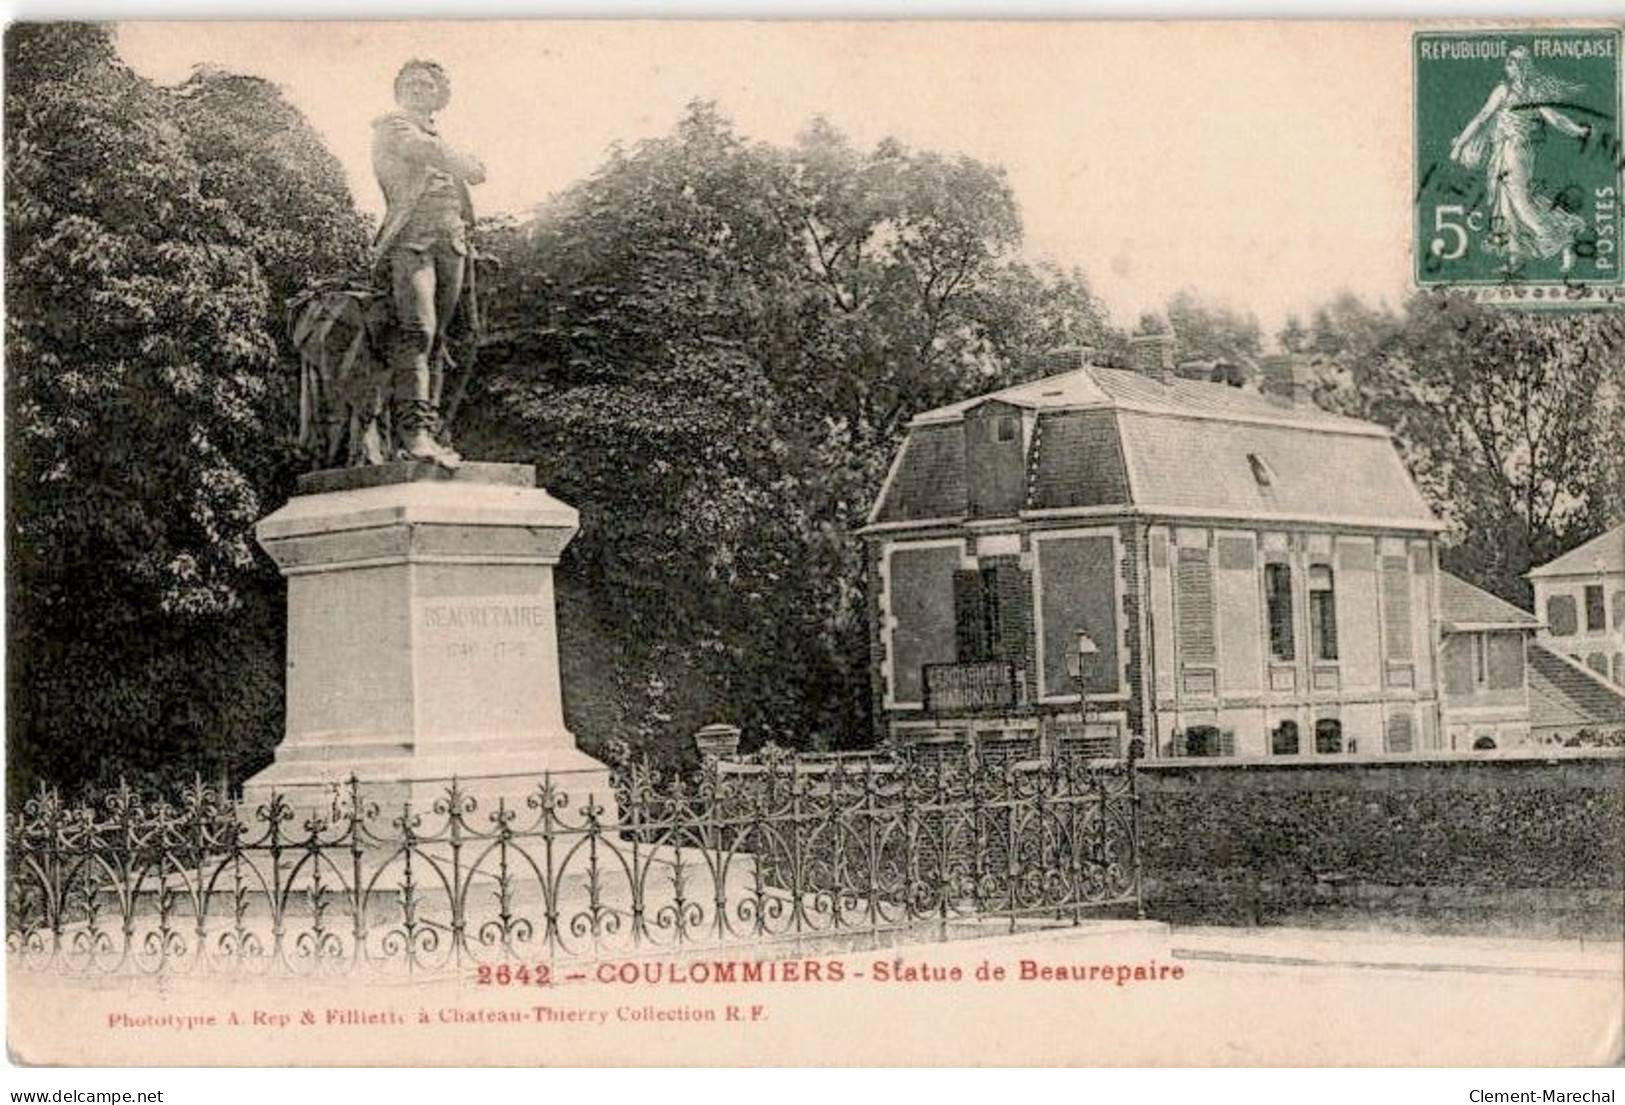 COULOMMIERS: Statue De Beaurepaire - Très Bon état - Coulommiers